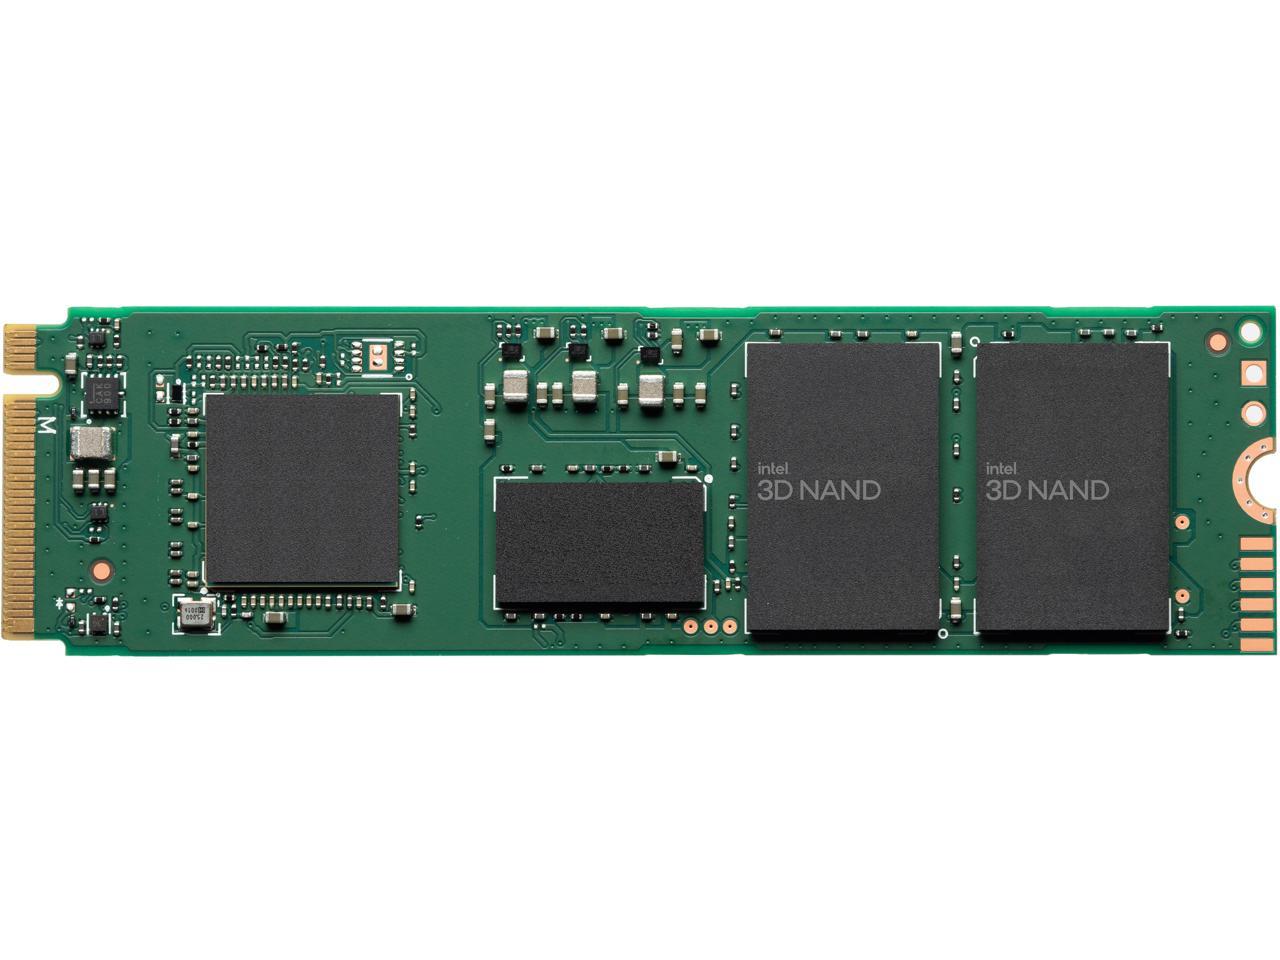 2TB Intel Series M.2 2280 PCIe 3.0 x4 NVMe QLC SSD